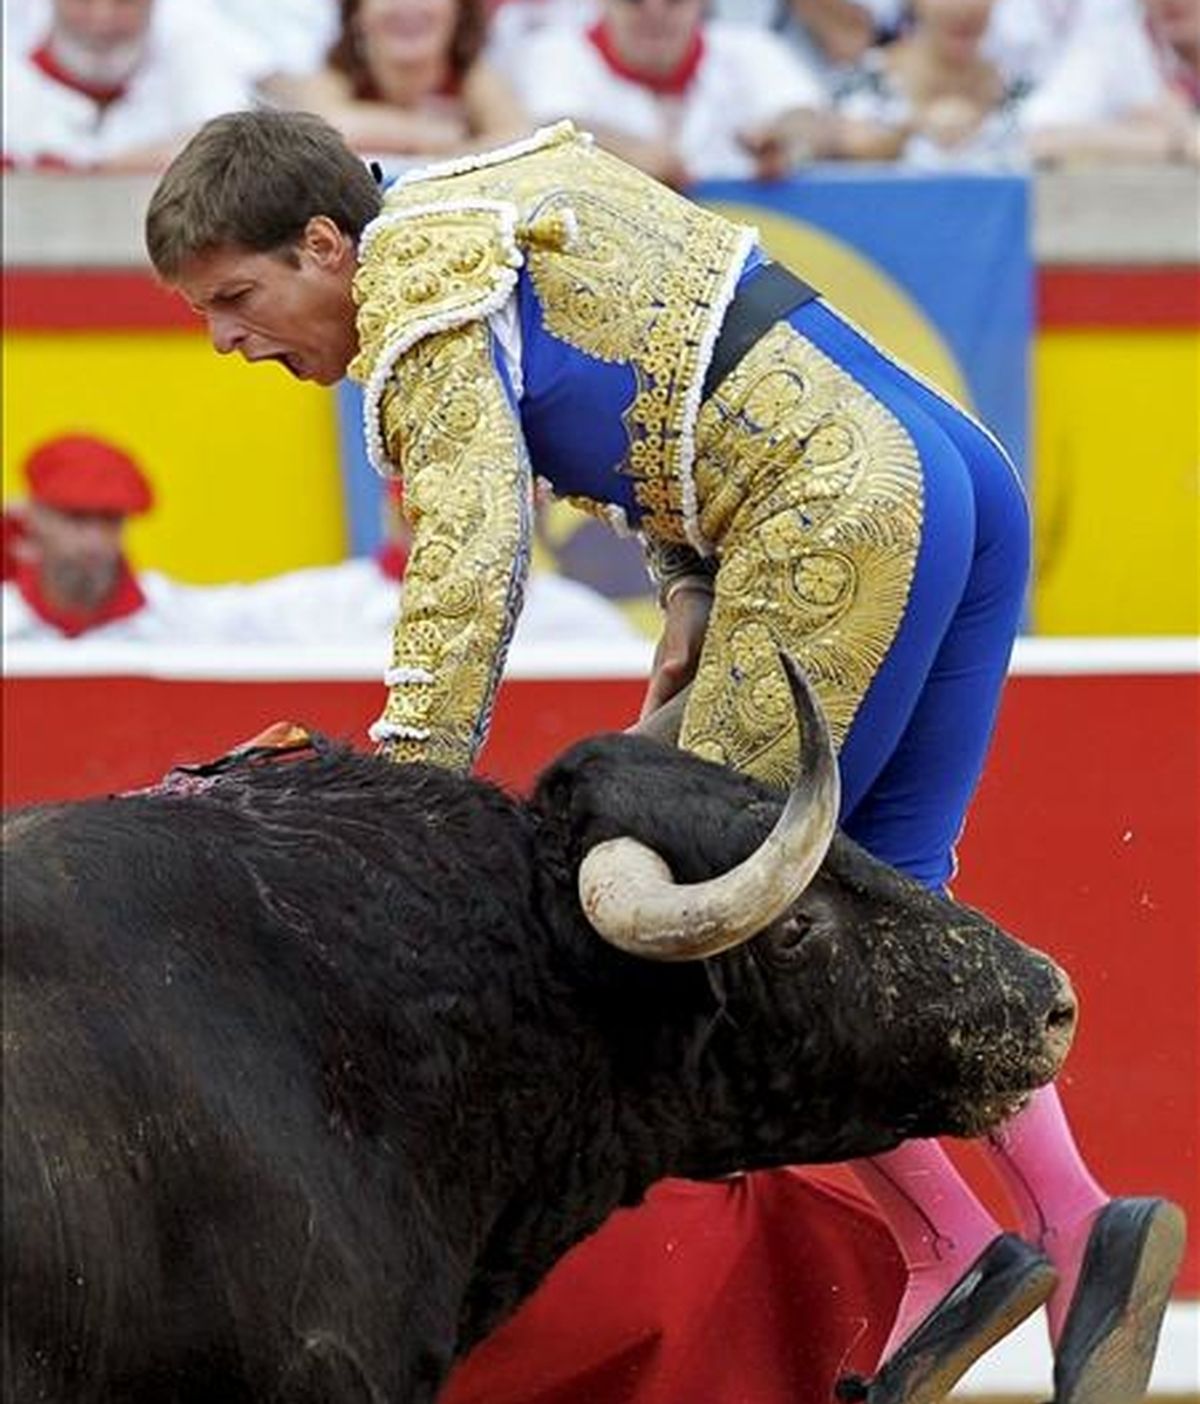 El diestro Julián López "El Juli" recibe un puntazo en el escroto por su segundo morlaco en la faena de muleta, durante el octavo festejo de la Feria del Toro con motivo de los Sanfermines celebrado en la plaza de toros de Pamplona. EFE